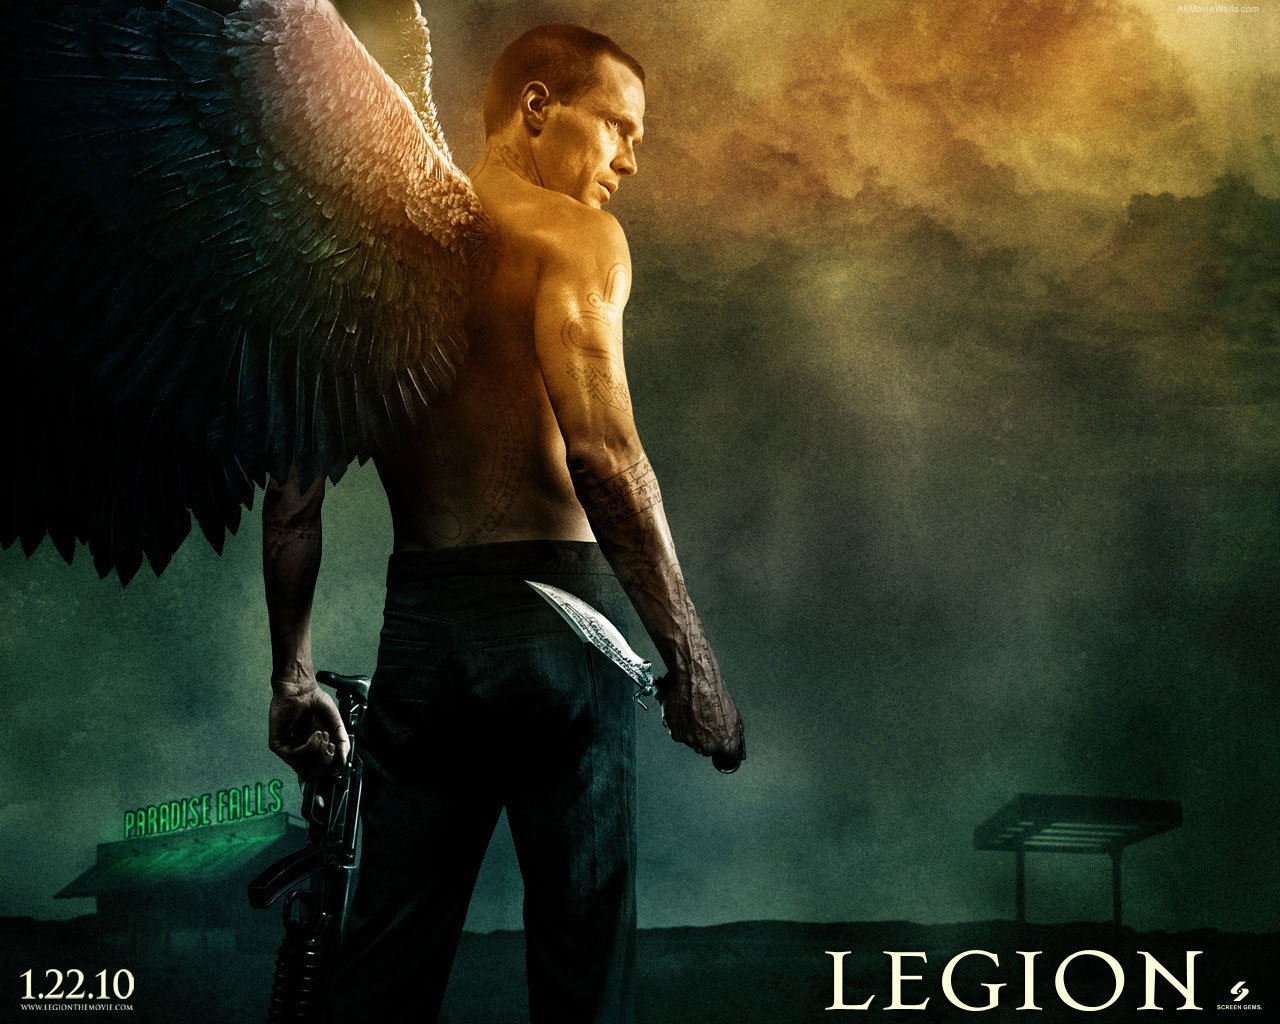 Legion movies in Australia